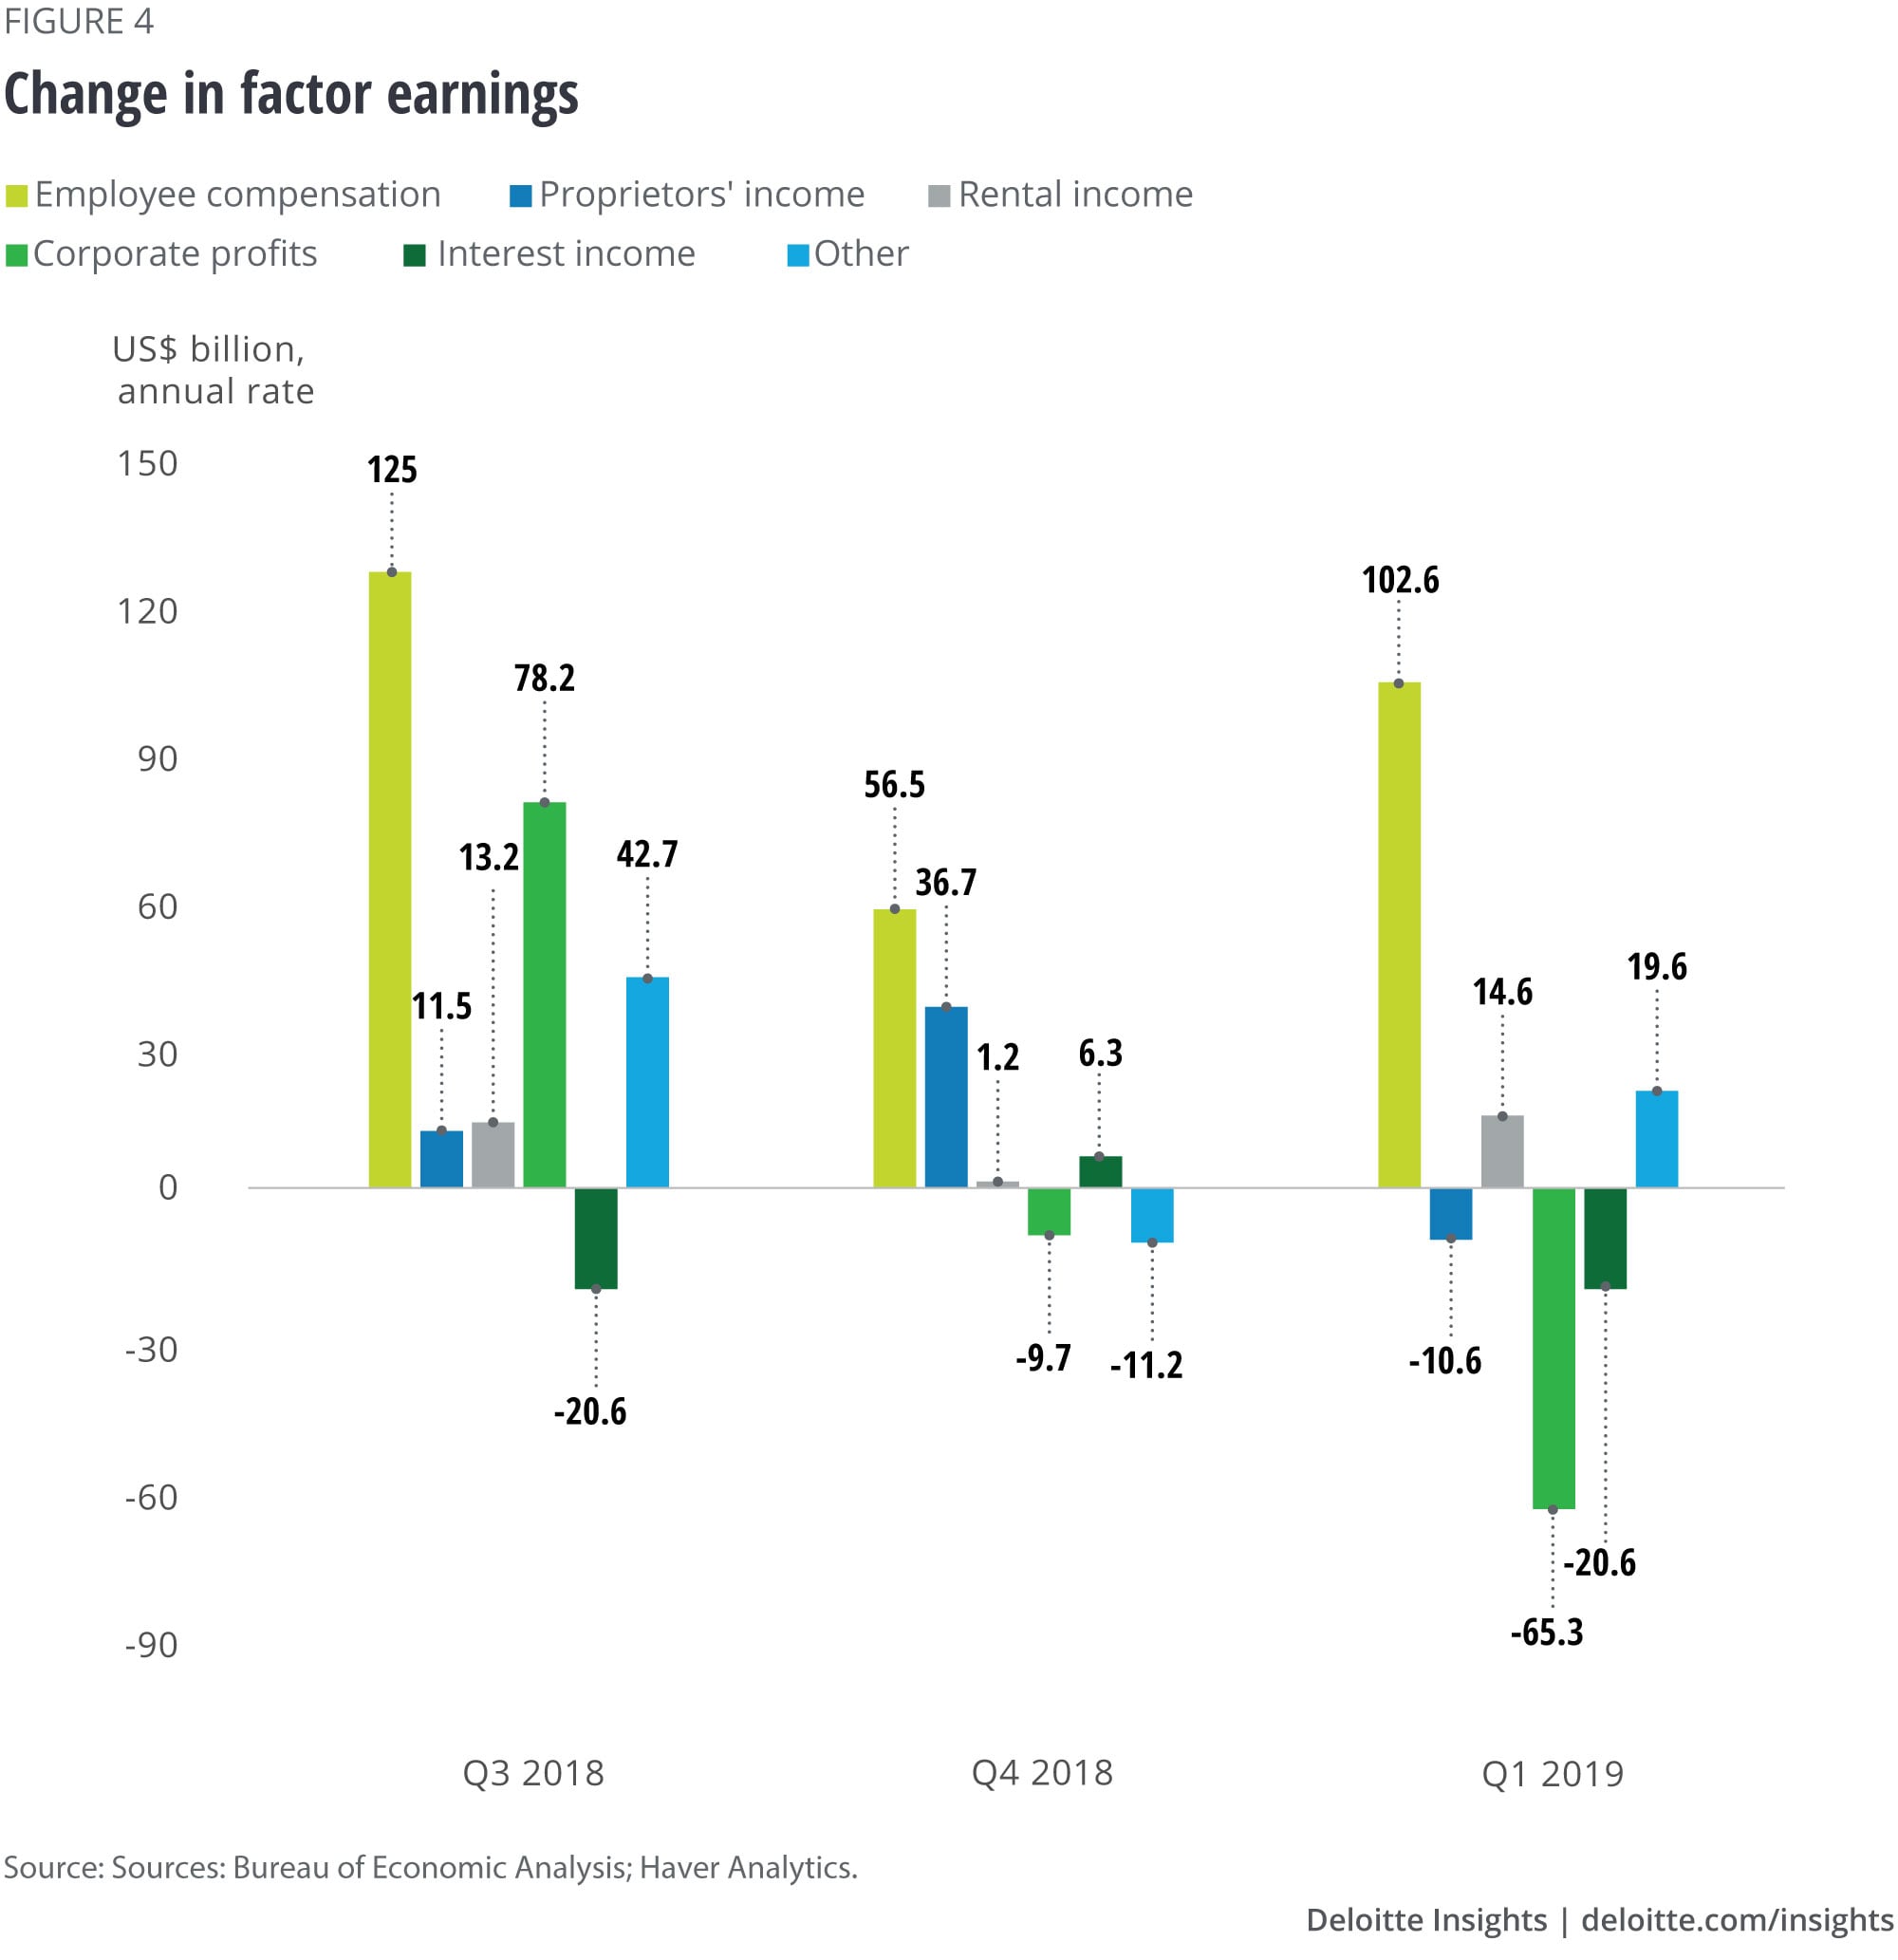 Change in factor earnings